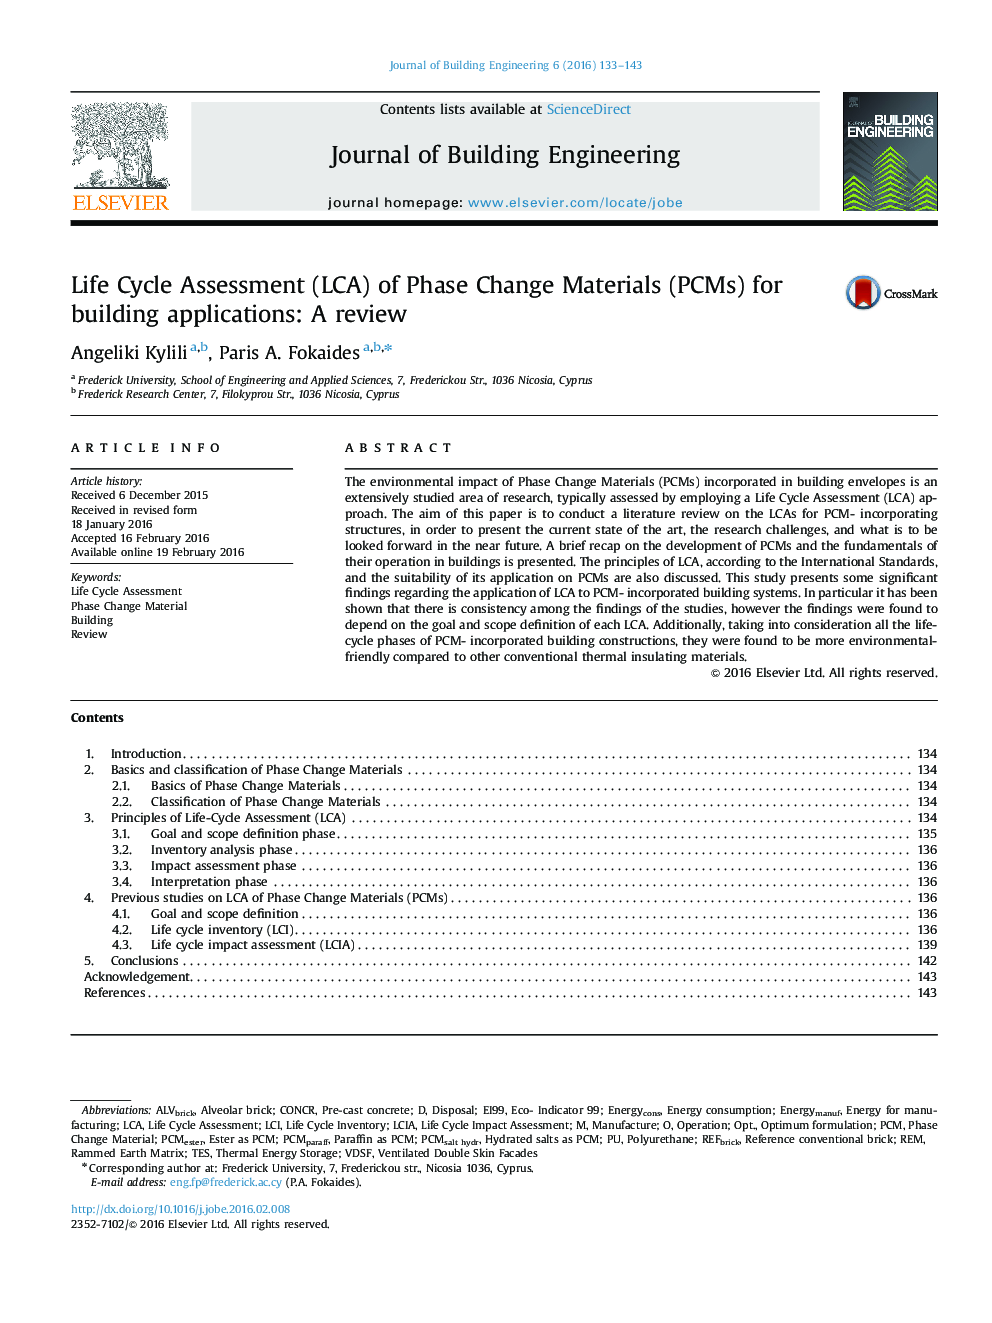 ارزیابی چرخه زندگی (LCA) تغییر فاز مواد (PCM ها) برای ساخت برنامه های کاربردی: بررسی